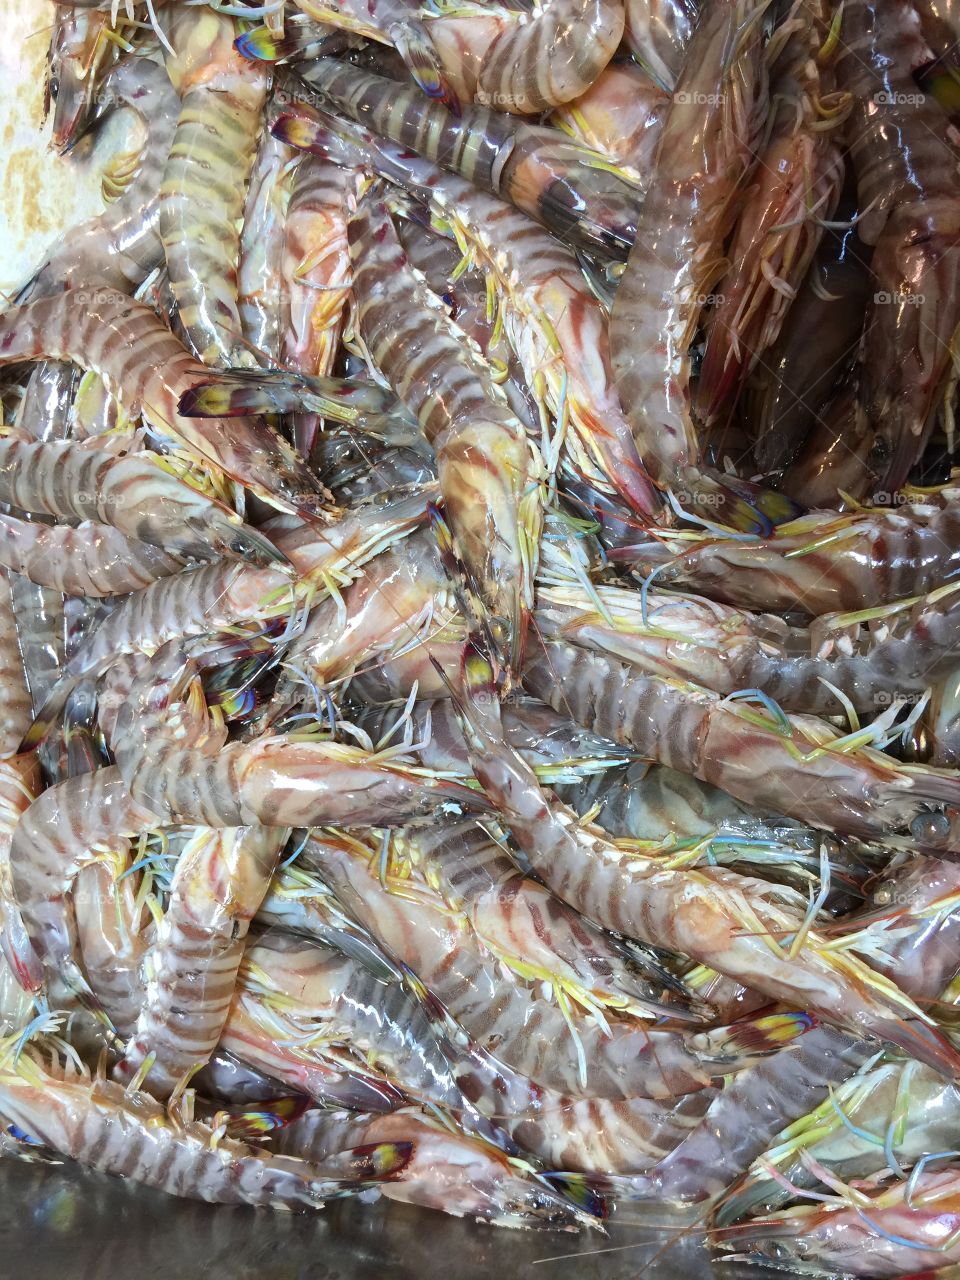 Shrimps in a fish market 